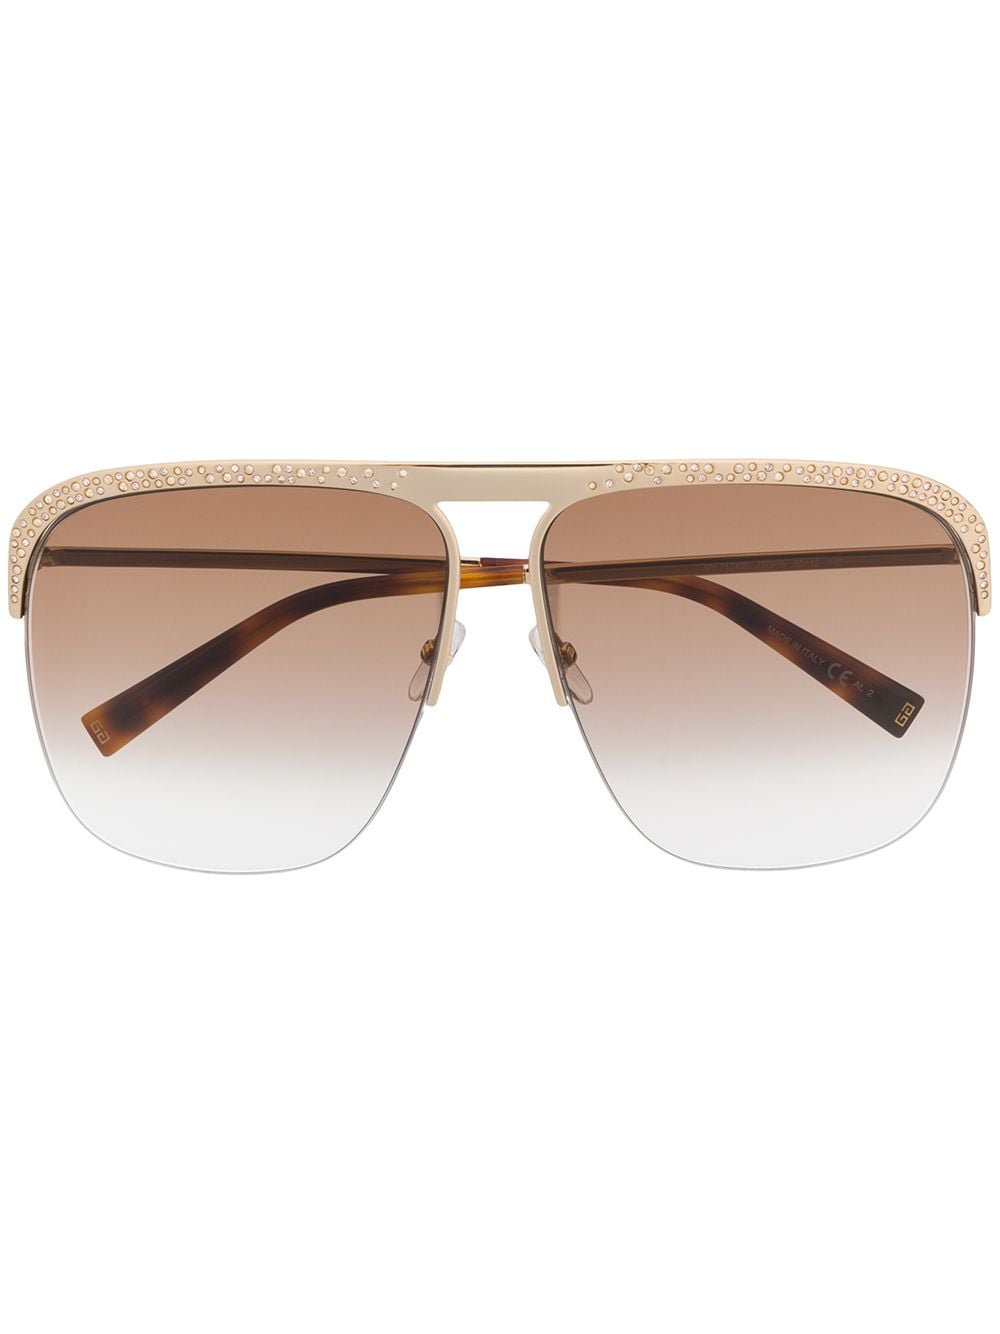 фото Givenchy eyewear солнцезащитные очки-авиаторы с кристаллами